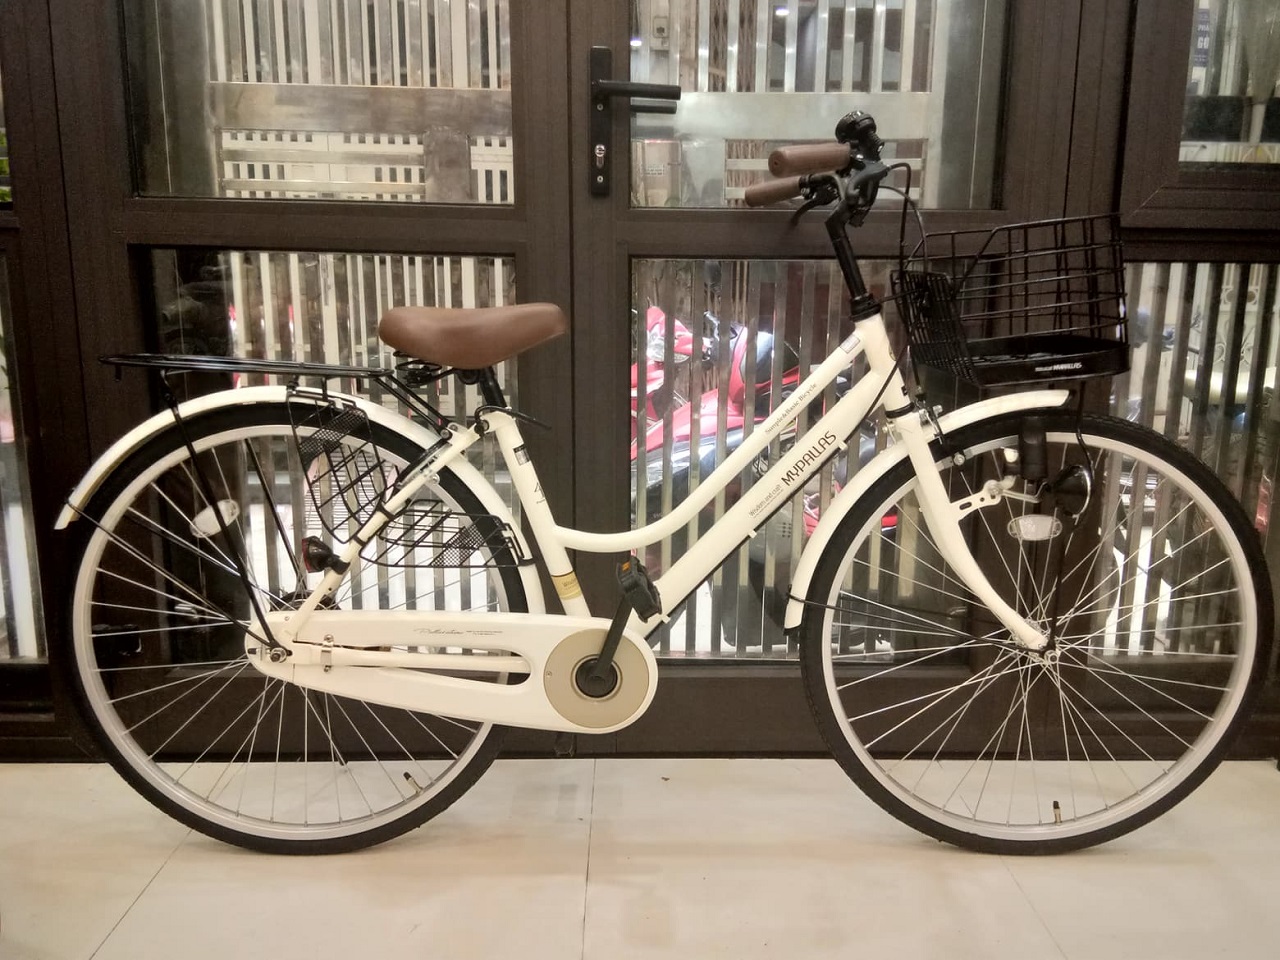 Xe đạp điện nội địa Nhật Bán TPHCM X12  Shopee Việt Nam